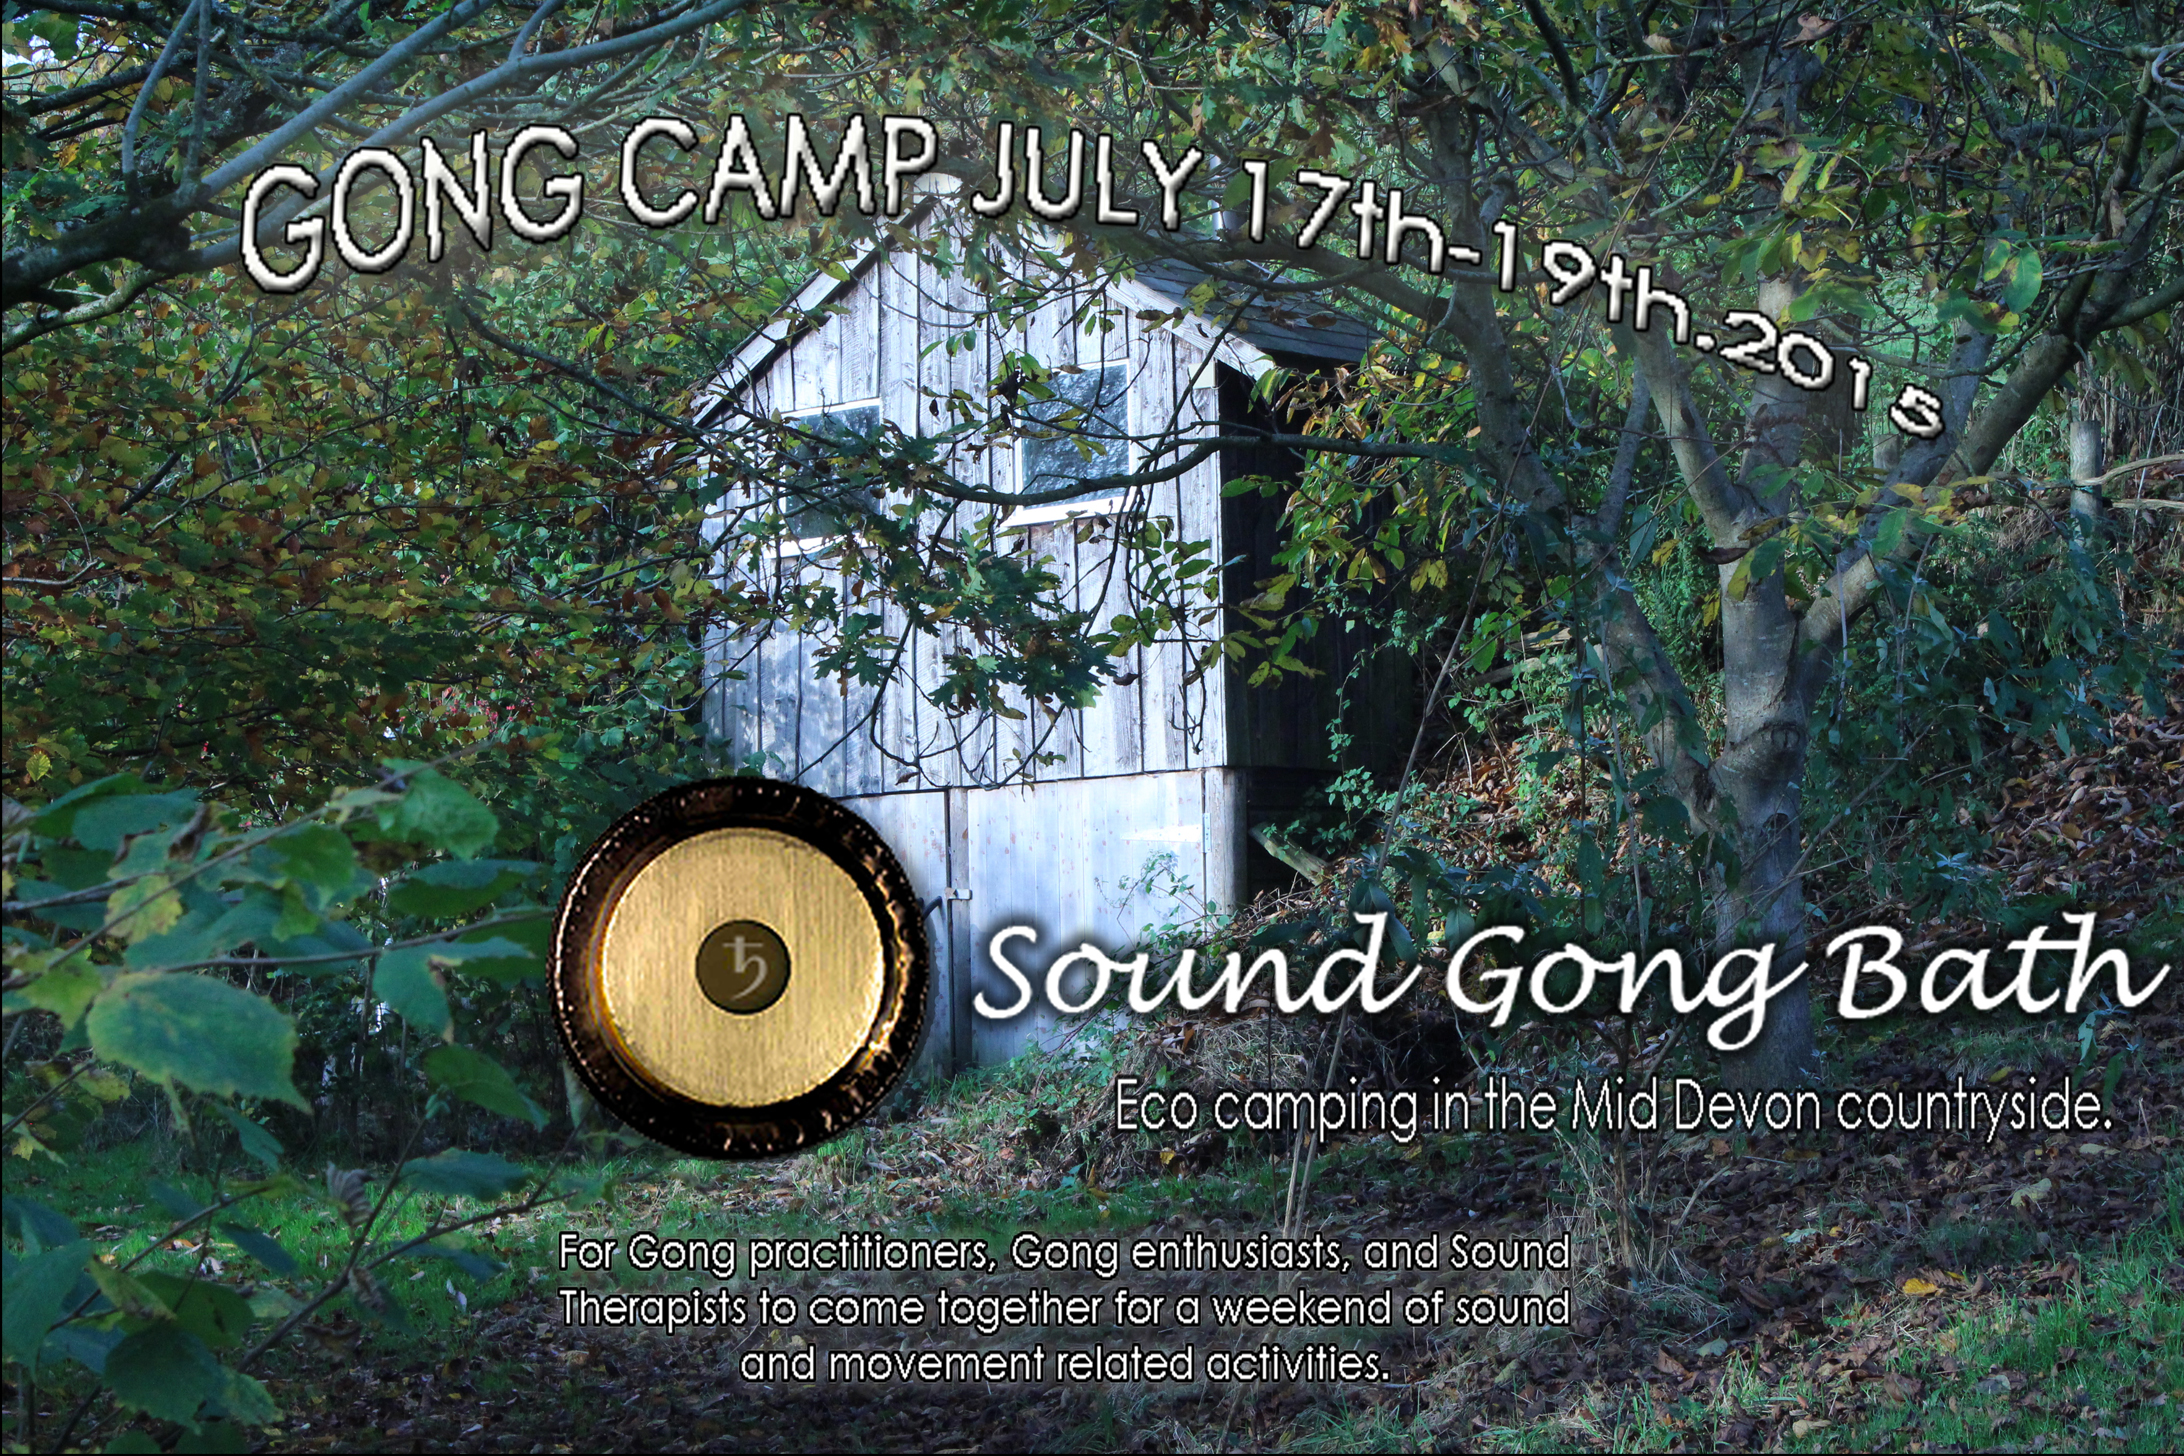 TIVERTON, DEVON - Gong Camp